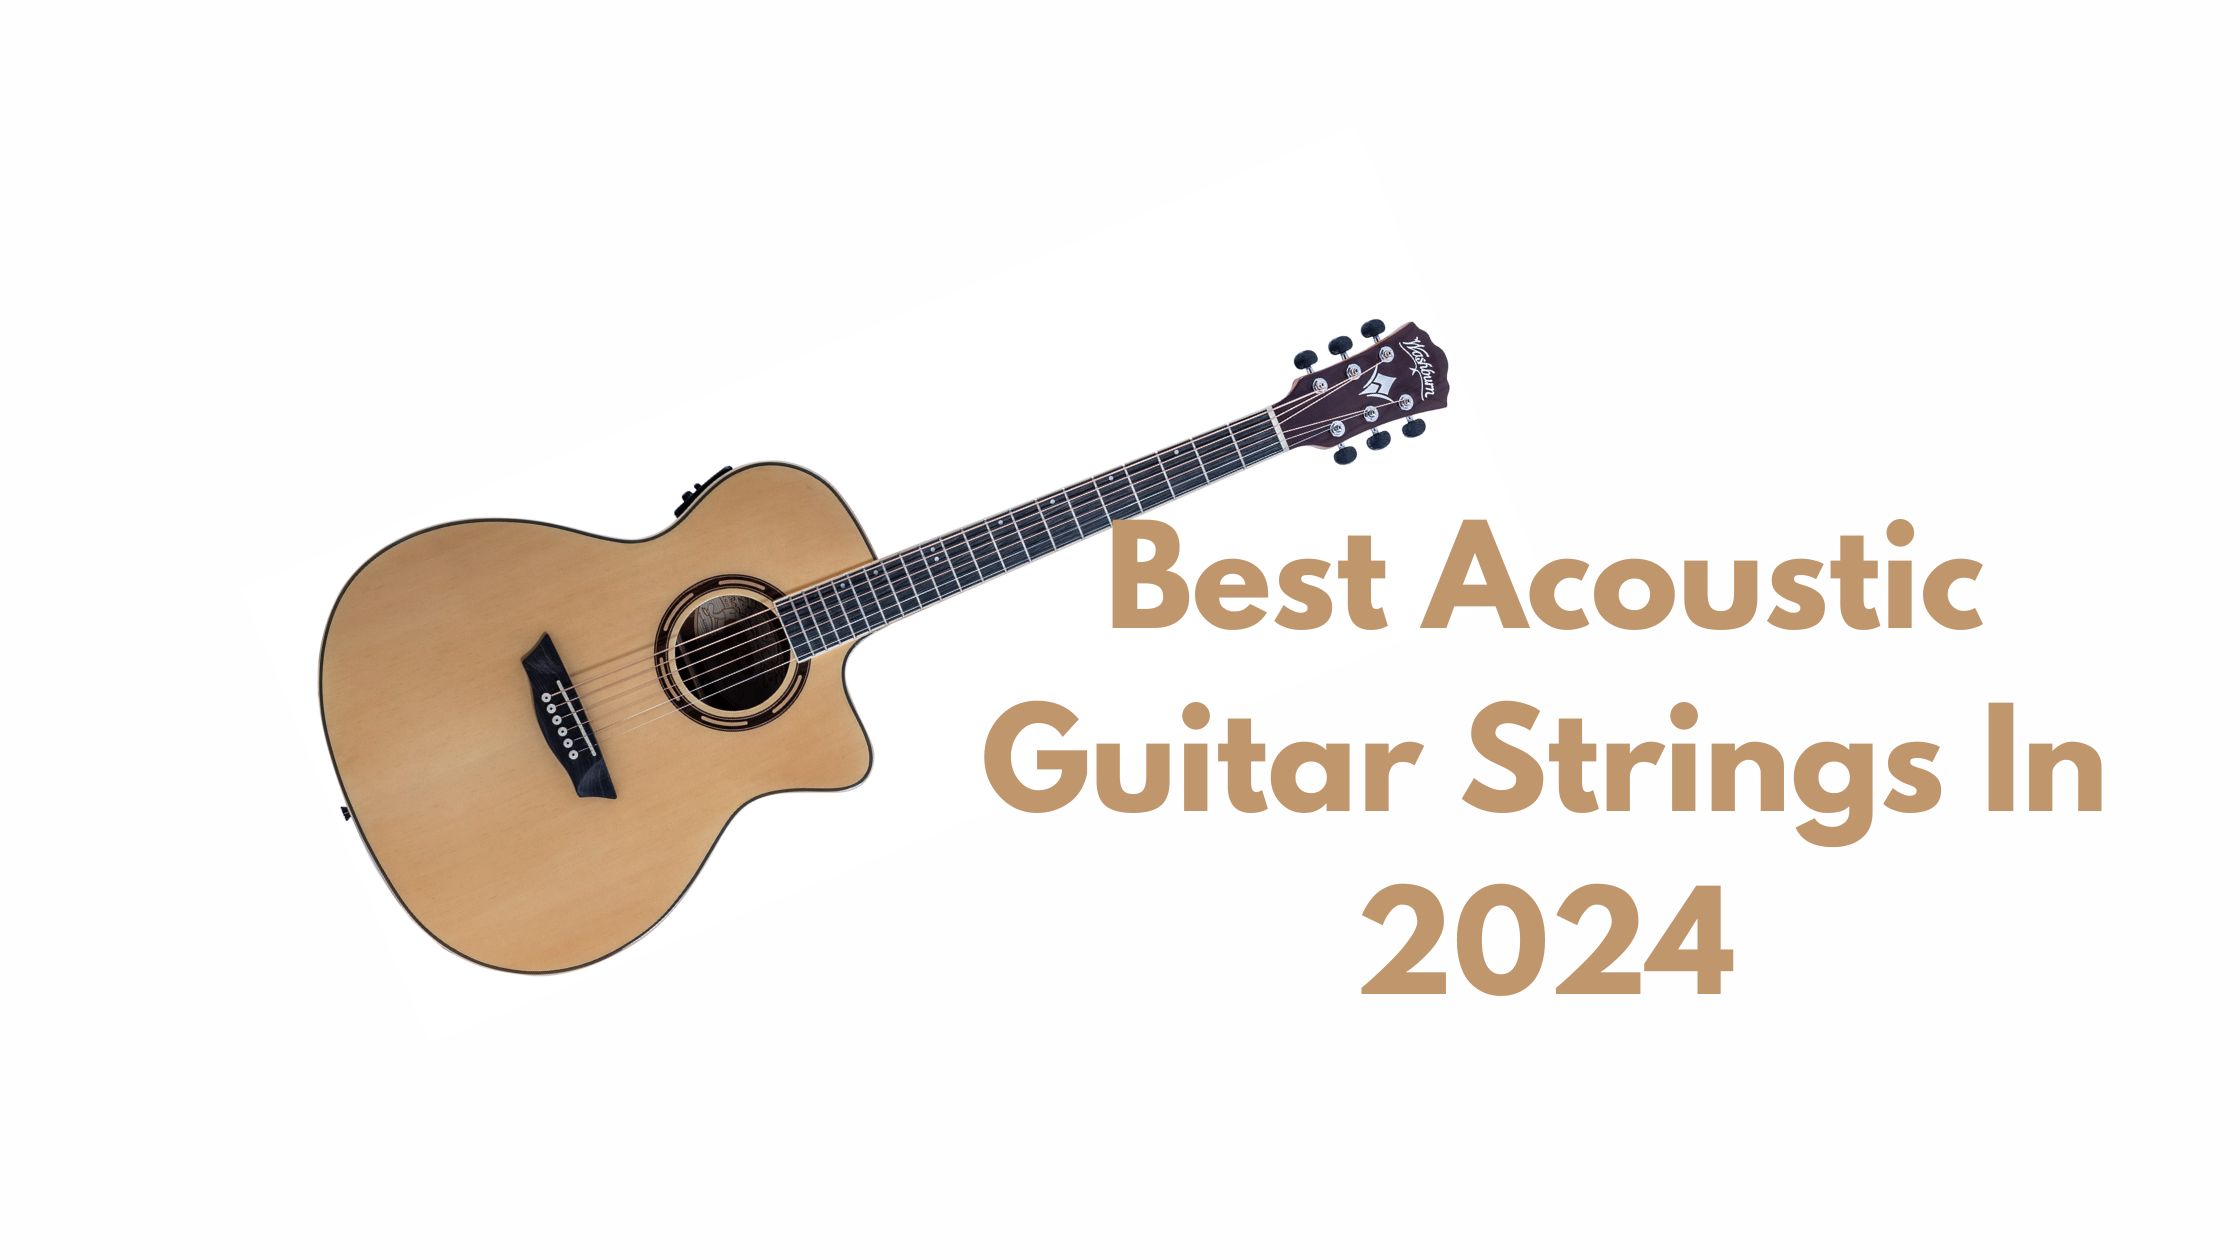 Best Acoustic Guitar Strings In 2024